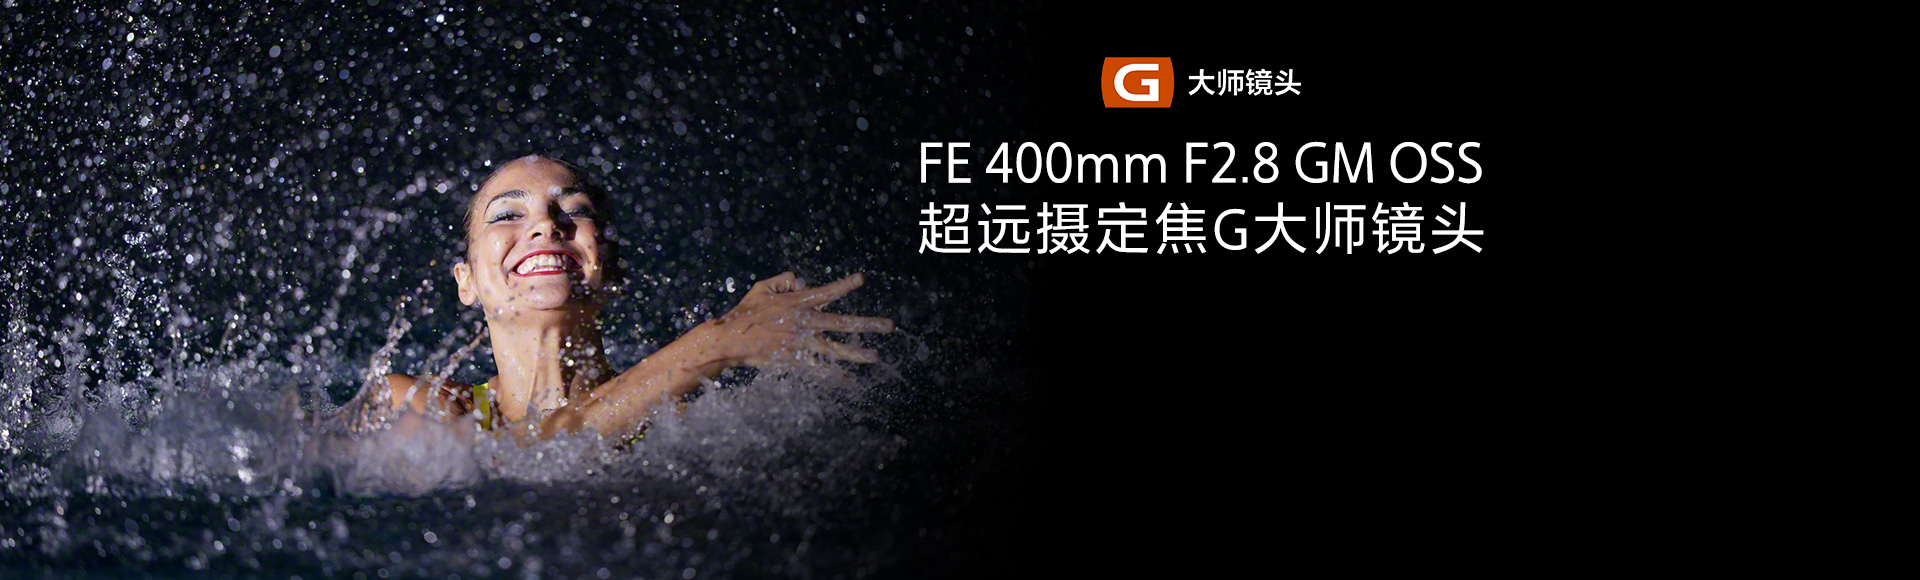 FE 400mm F2.8 GM OSS超远摄定焦G大师镜头